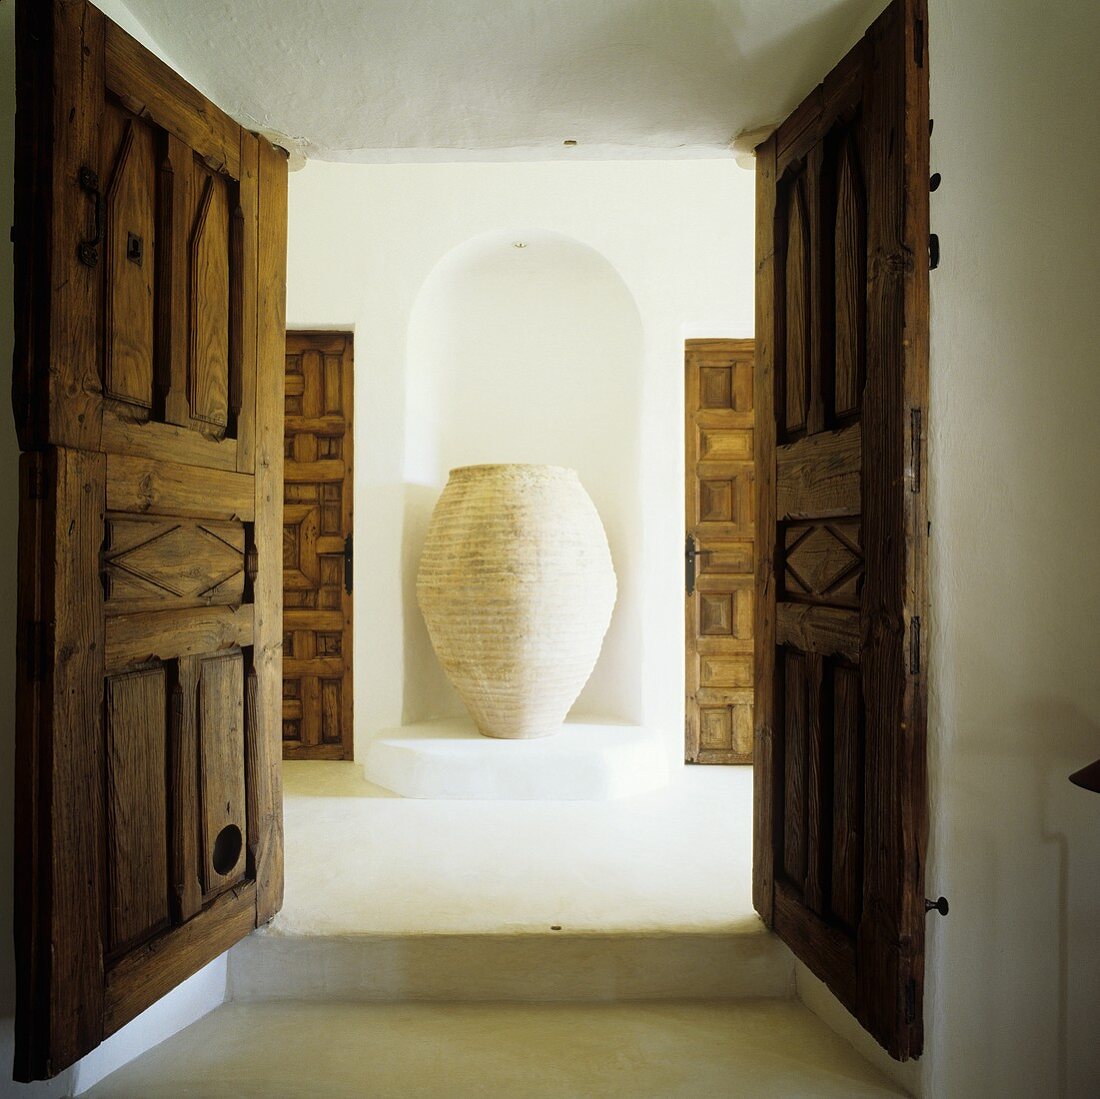 Blick durch offene Holzflügeltür auf Amphore in Wandnische eines Mediterraner Hauses